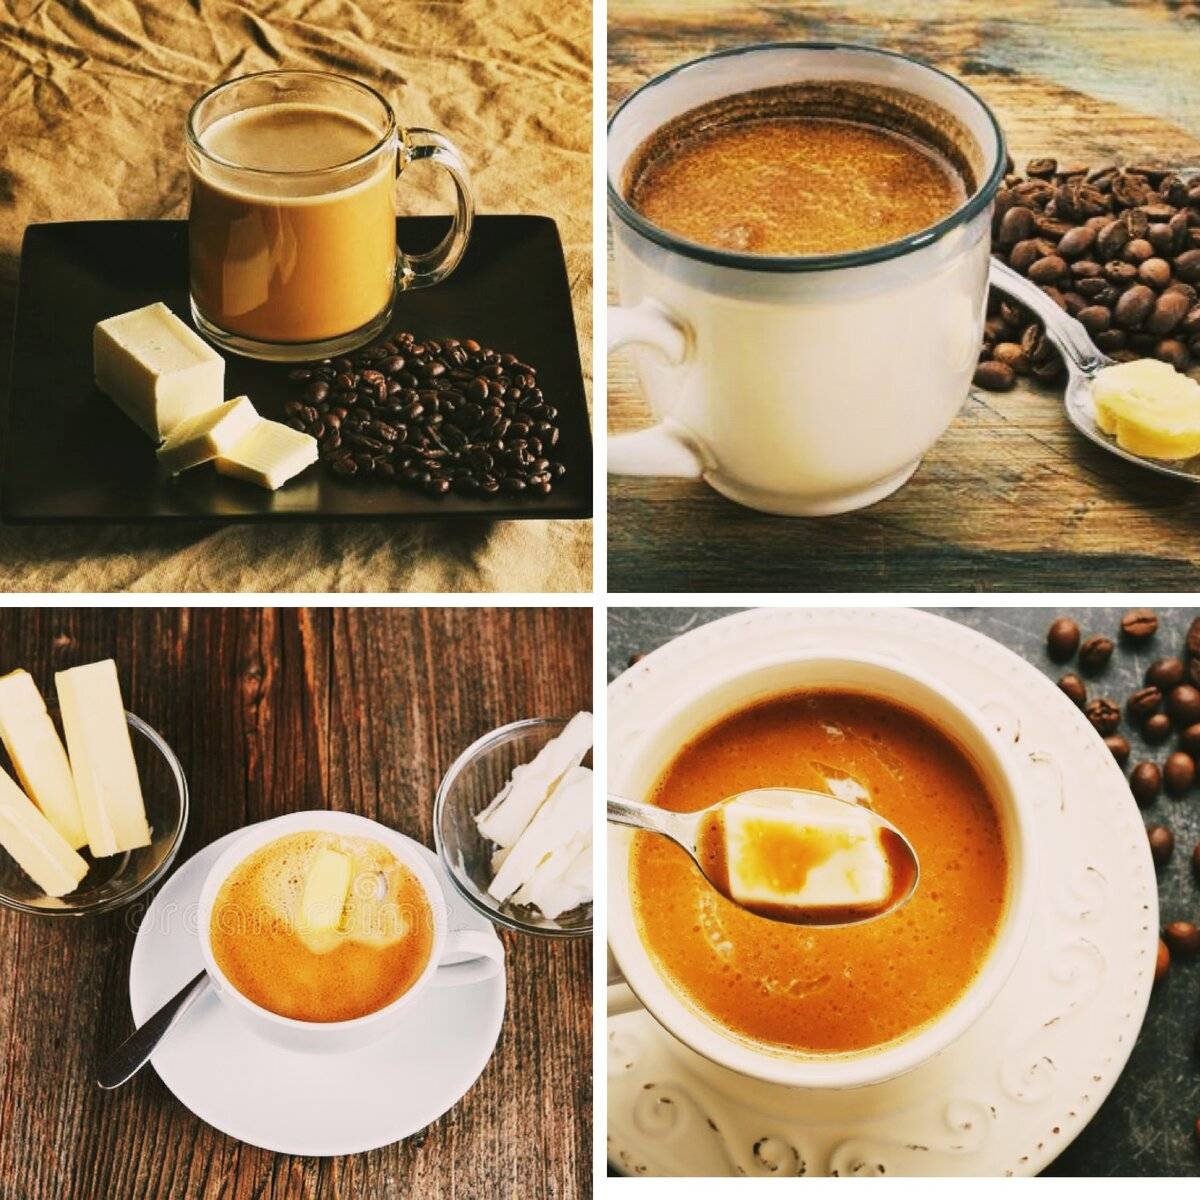 Как пить кофе с маслом для похудения?